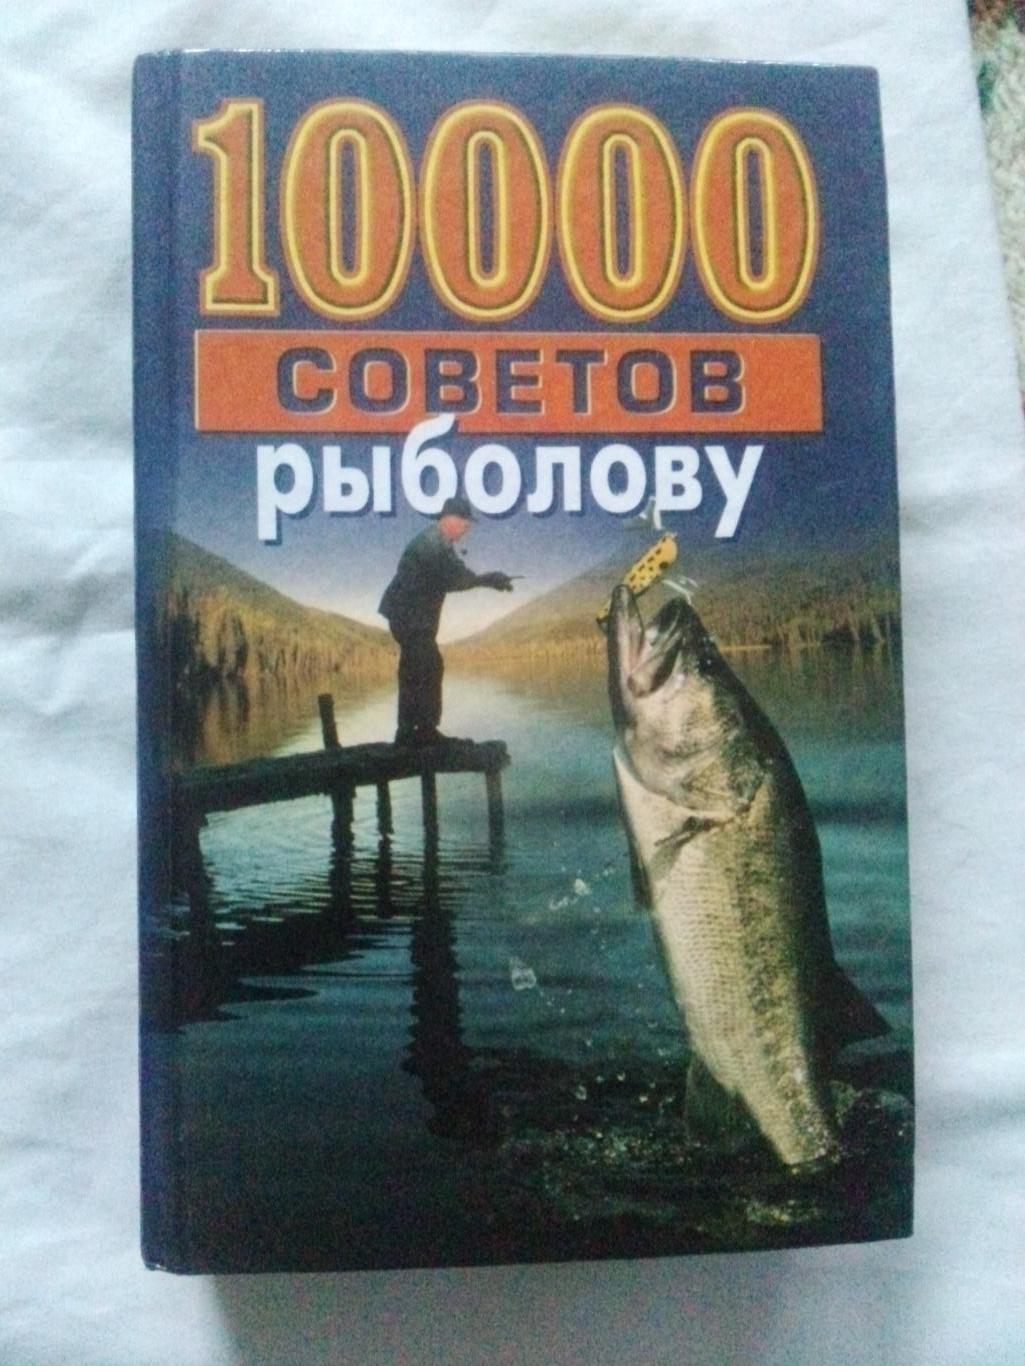 Энциклопедия10000 советов рыболову(1999 г.) Рыболов , рыбалка